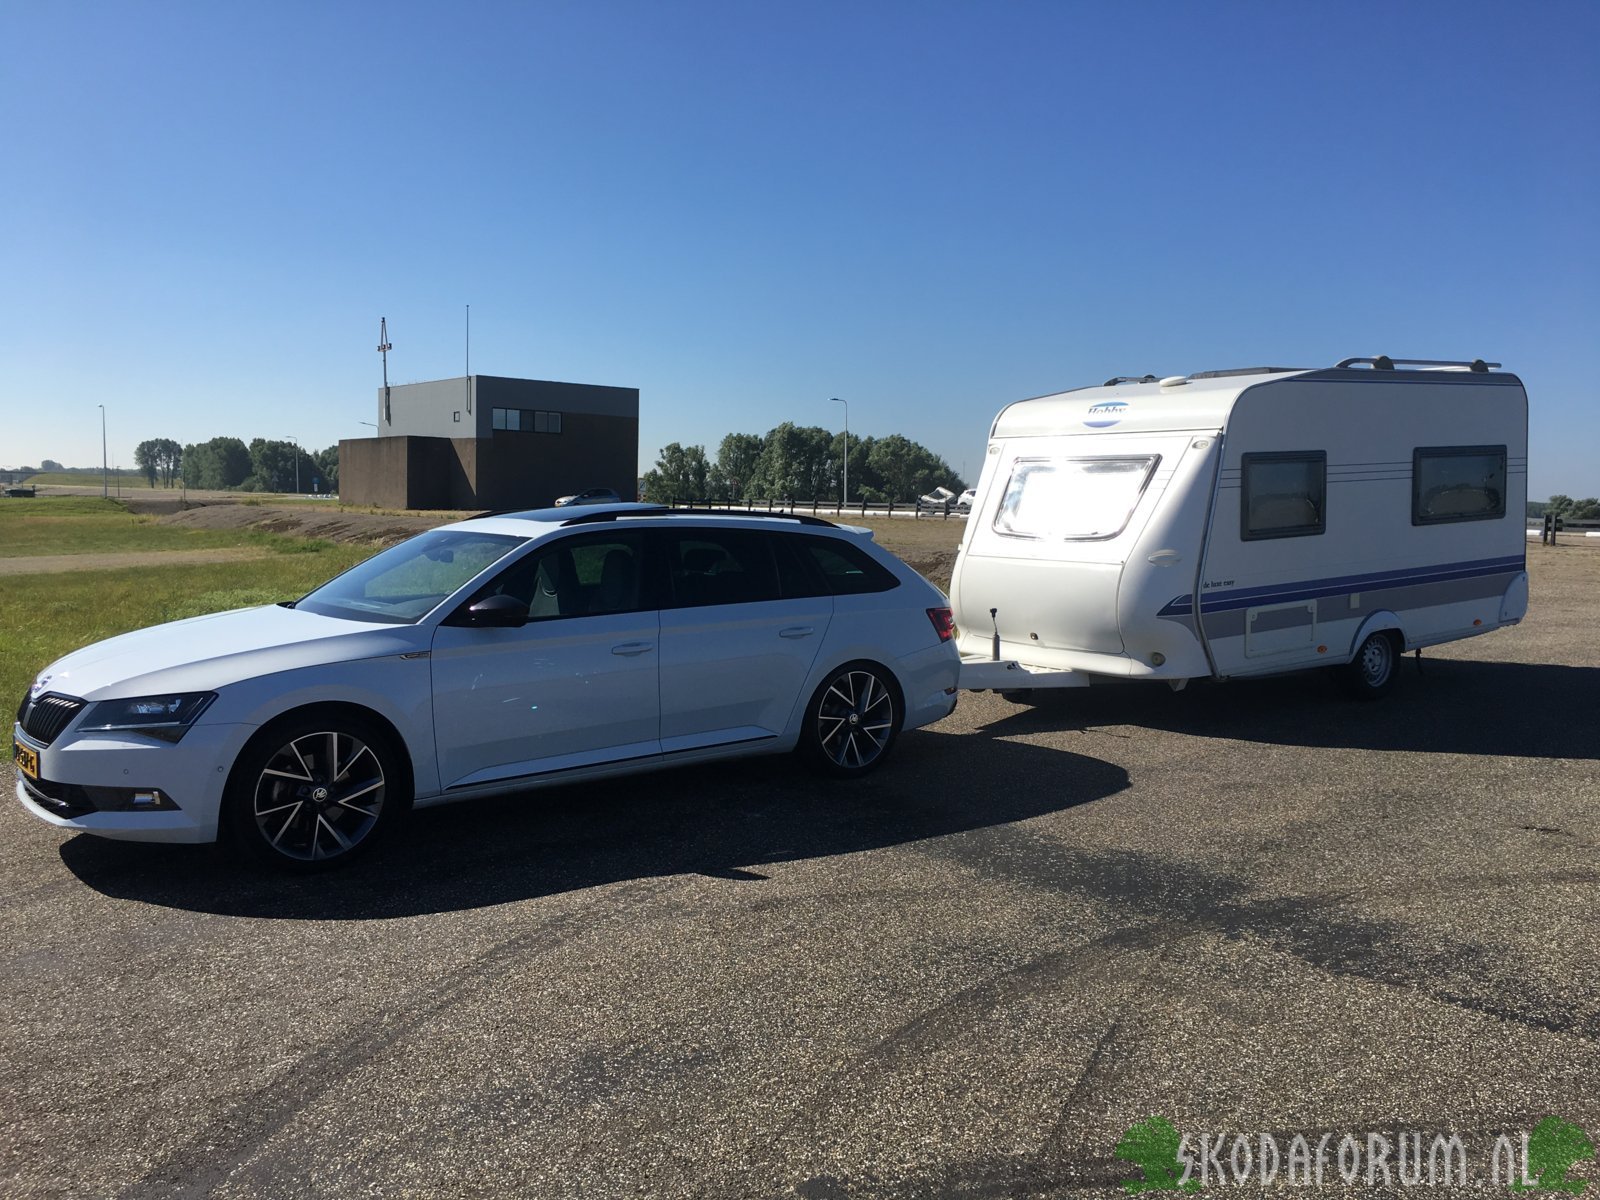 S3 en caravan